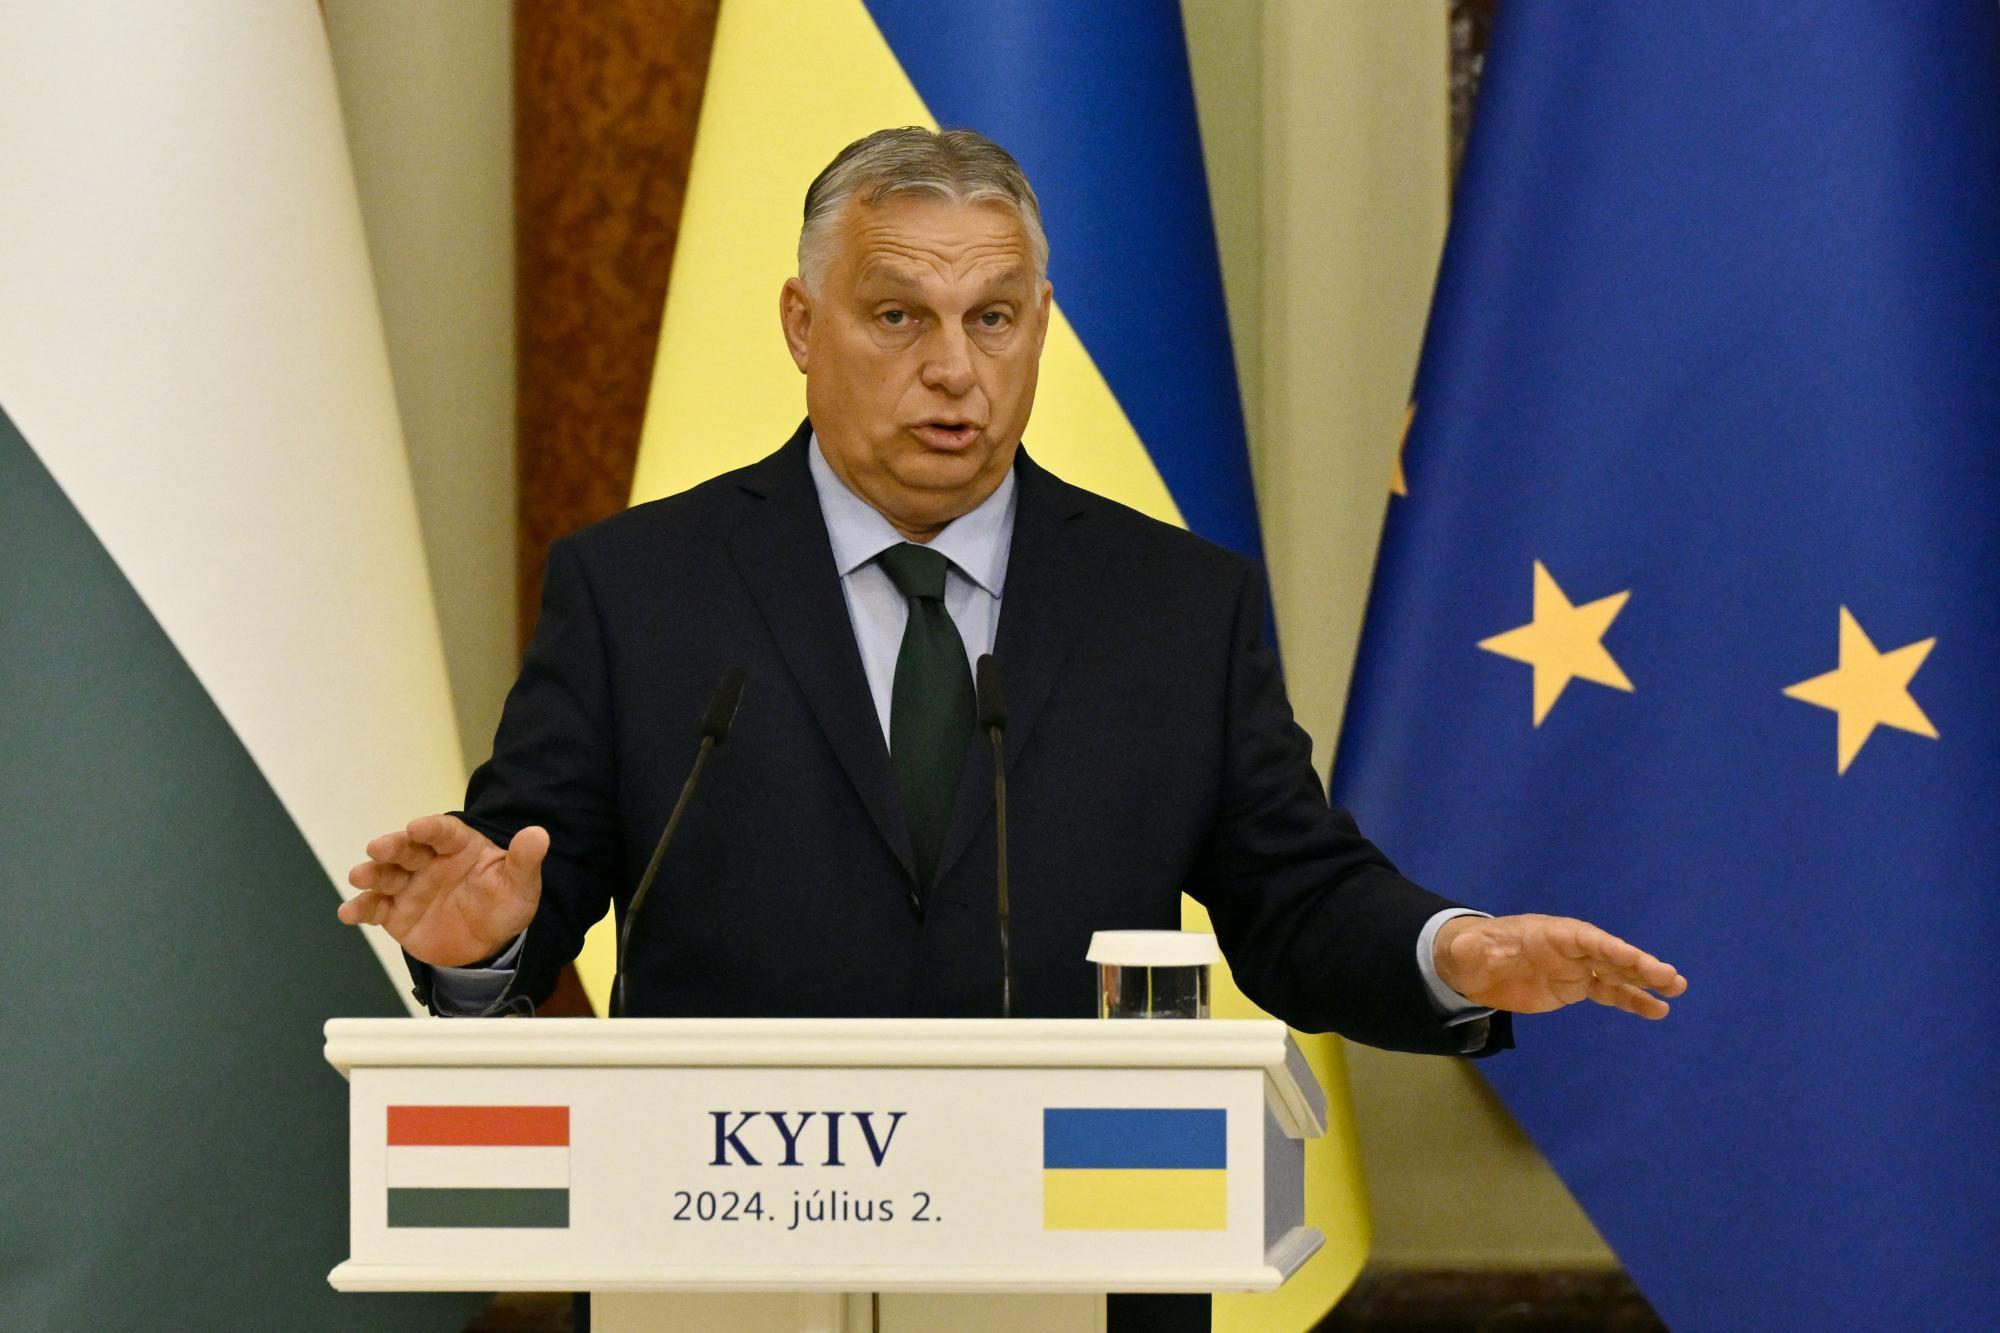 Laut Medienberichten Orbán am Freitag bei Putin